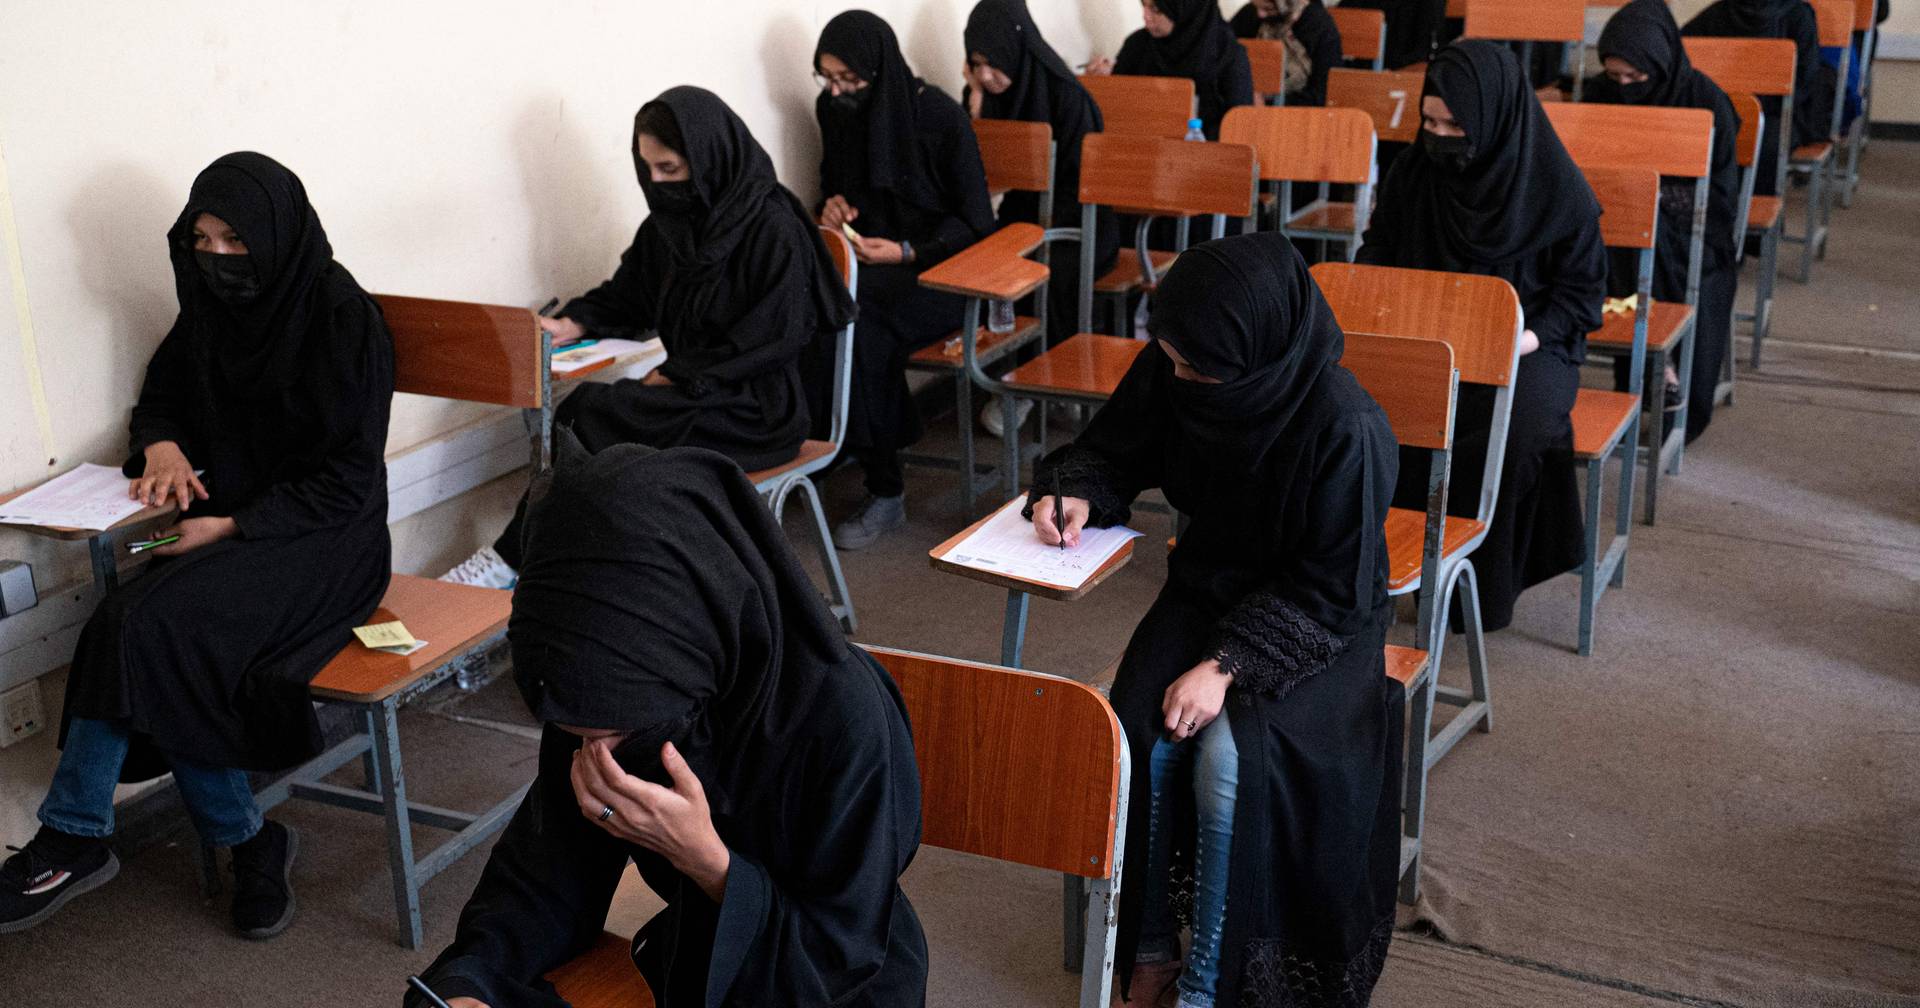 Taliban setzen aus Protest Wasserwerfer gegen Frauen ein, nachdem sie von Universitäten verbannt wurden